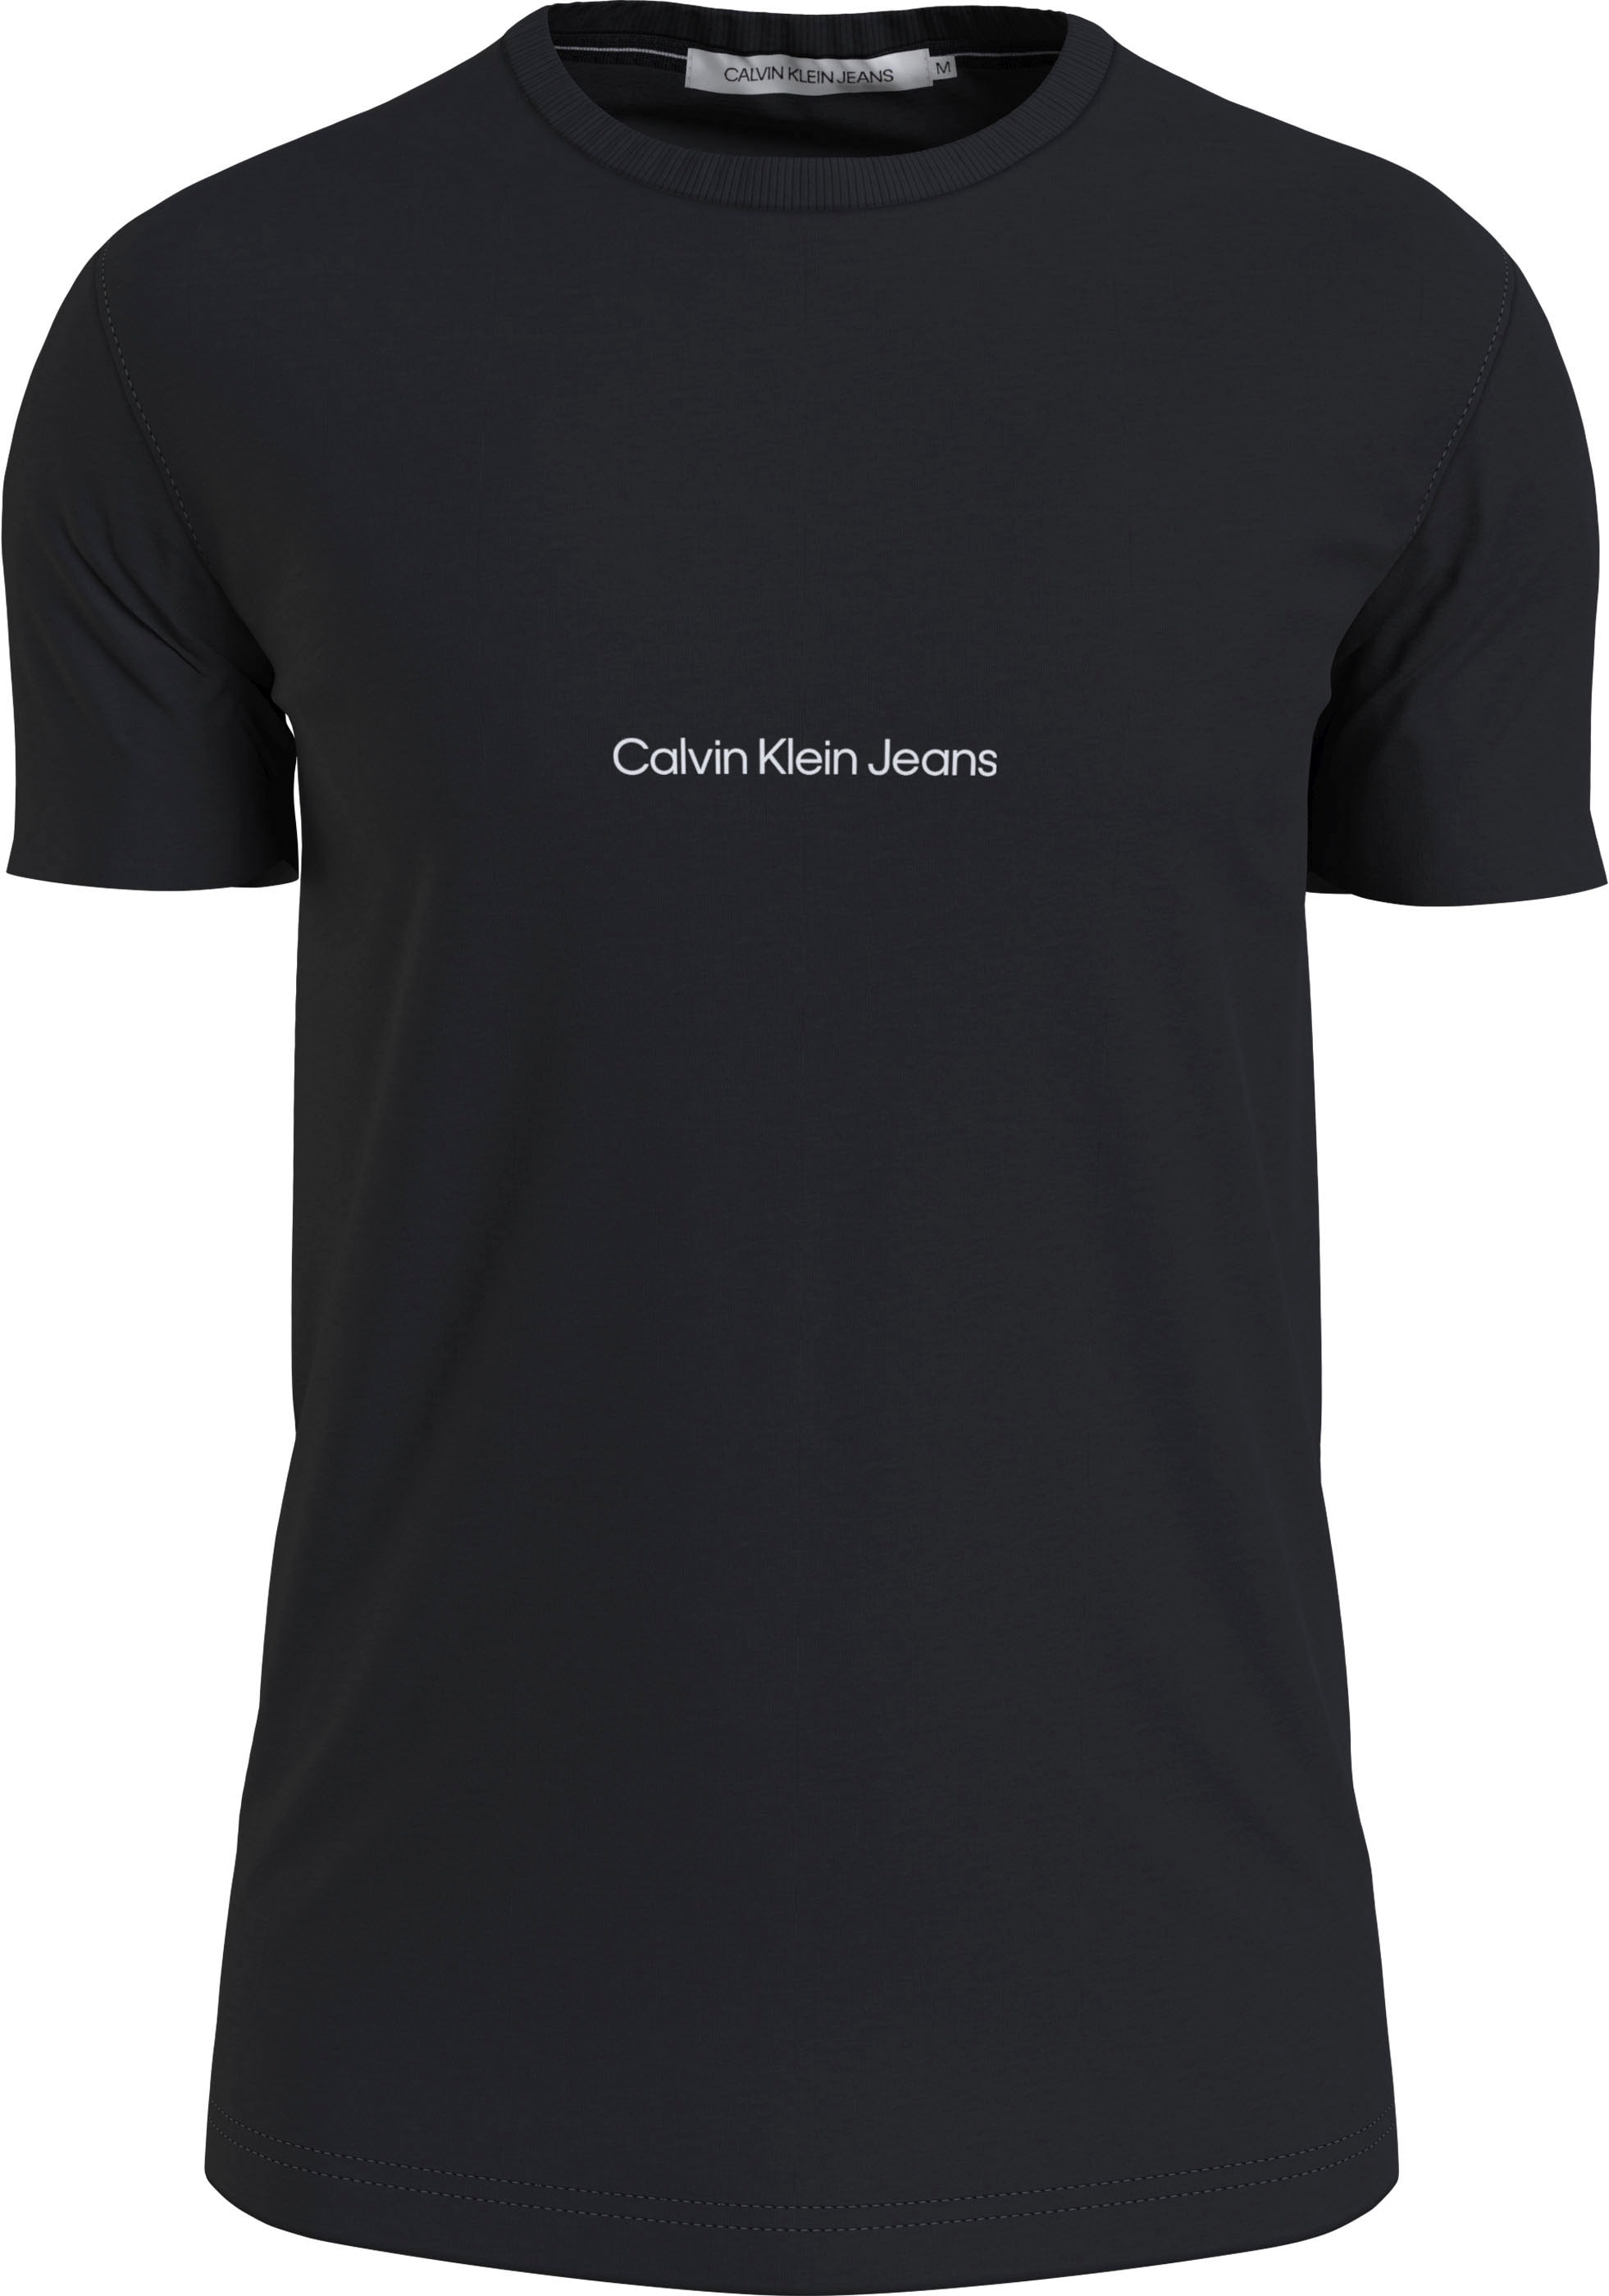 Calvin Klein Jeans Klein mit Calvin Kurzarmshirt, Jeans Logoprint kaufen